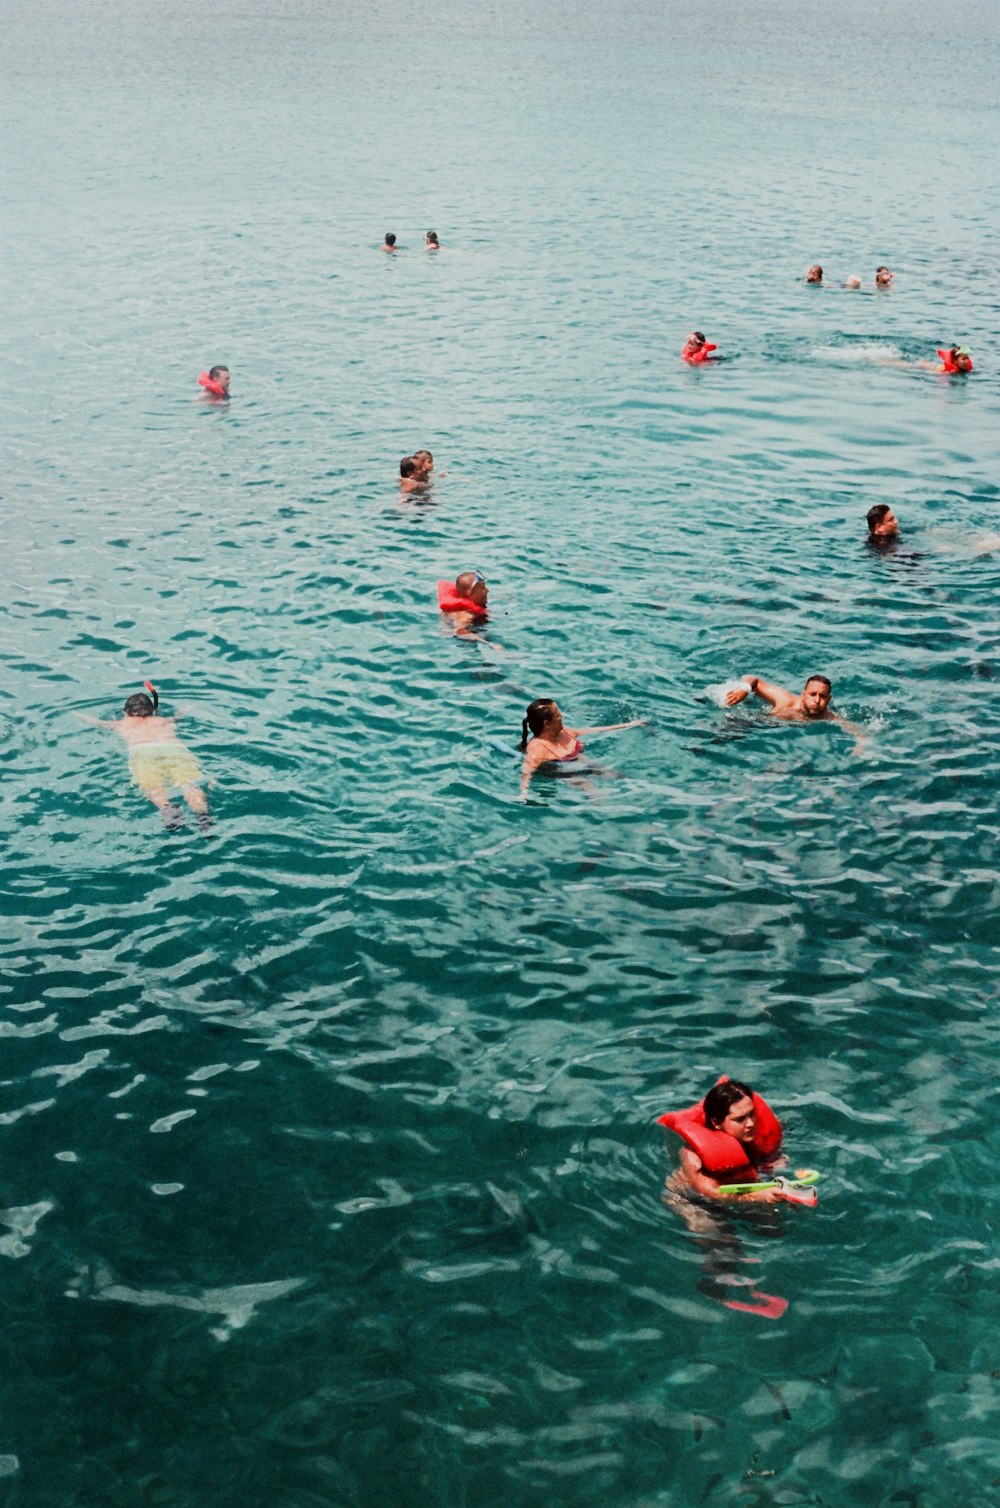 groupe de personnes nageant sur l’eau pendant la journée